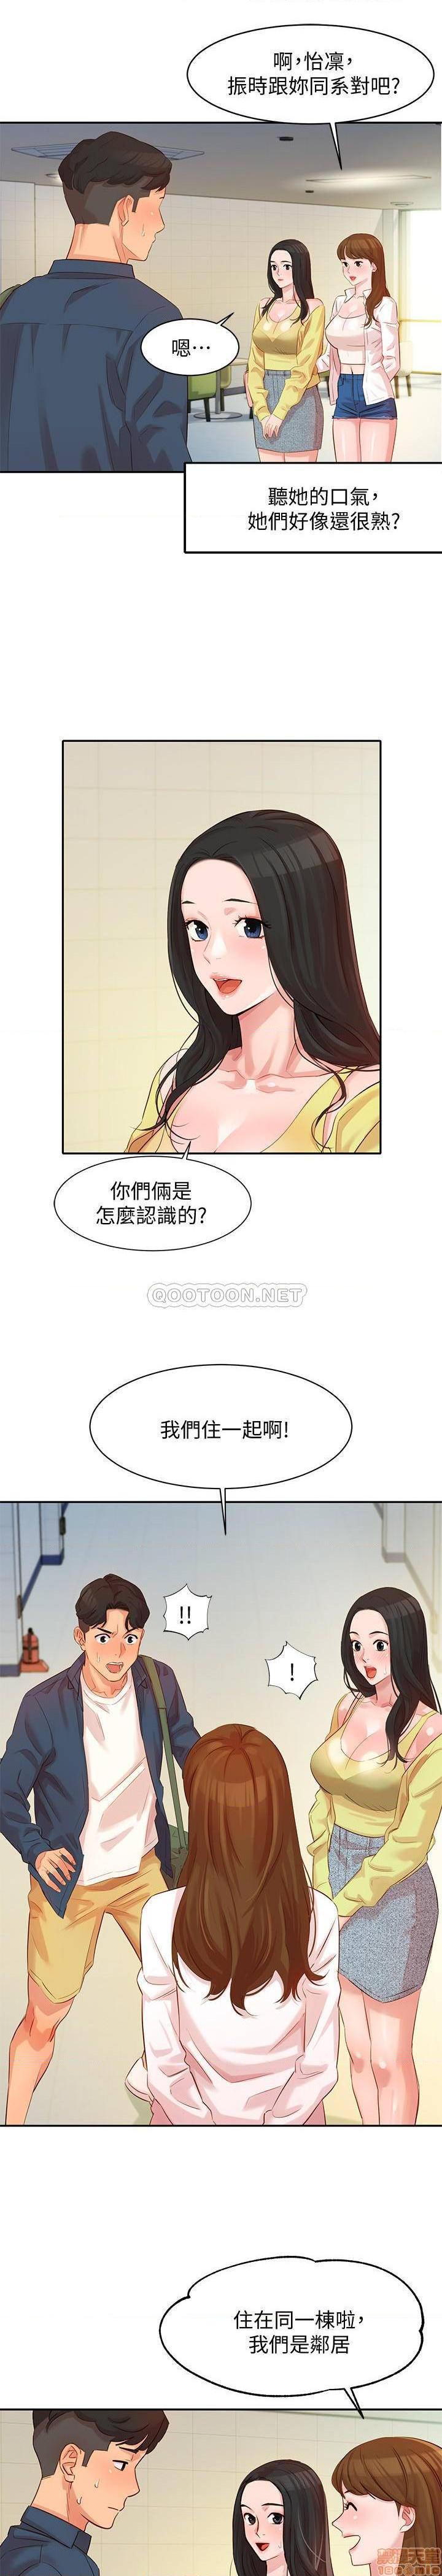 《女神写真》漫画 第4话 - 清纯女神怡凛的大胆裸露